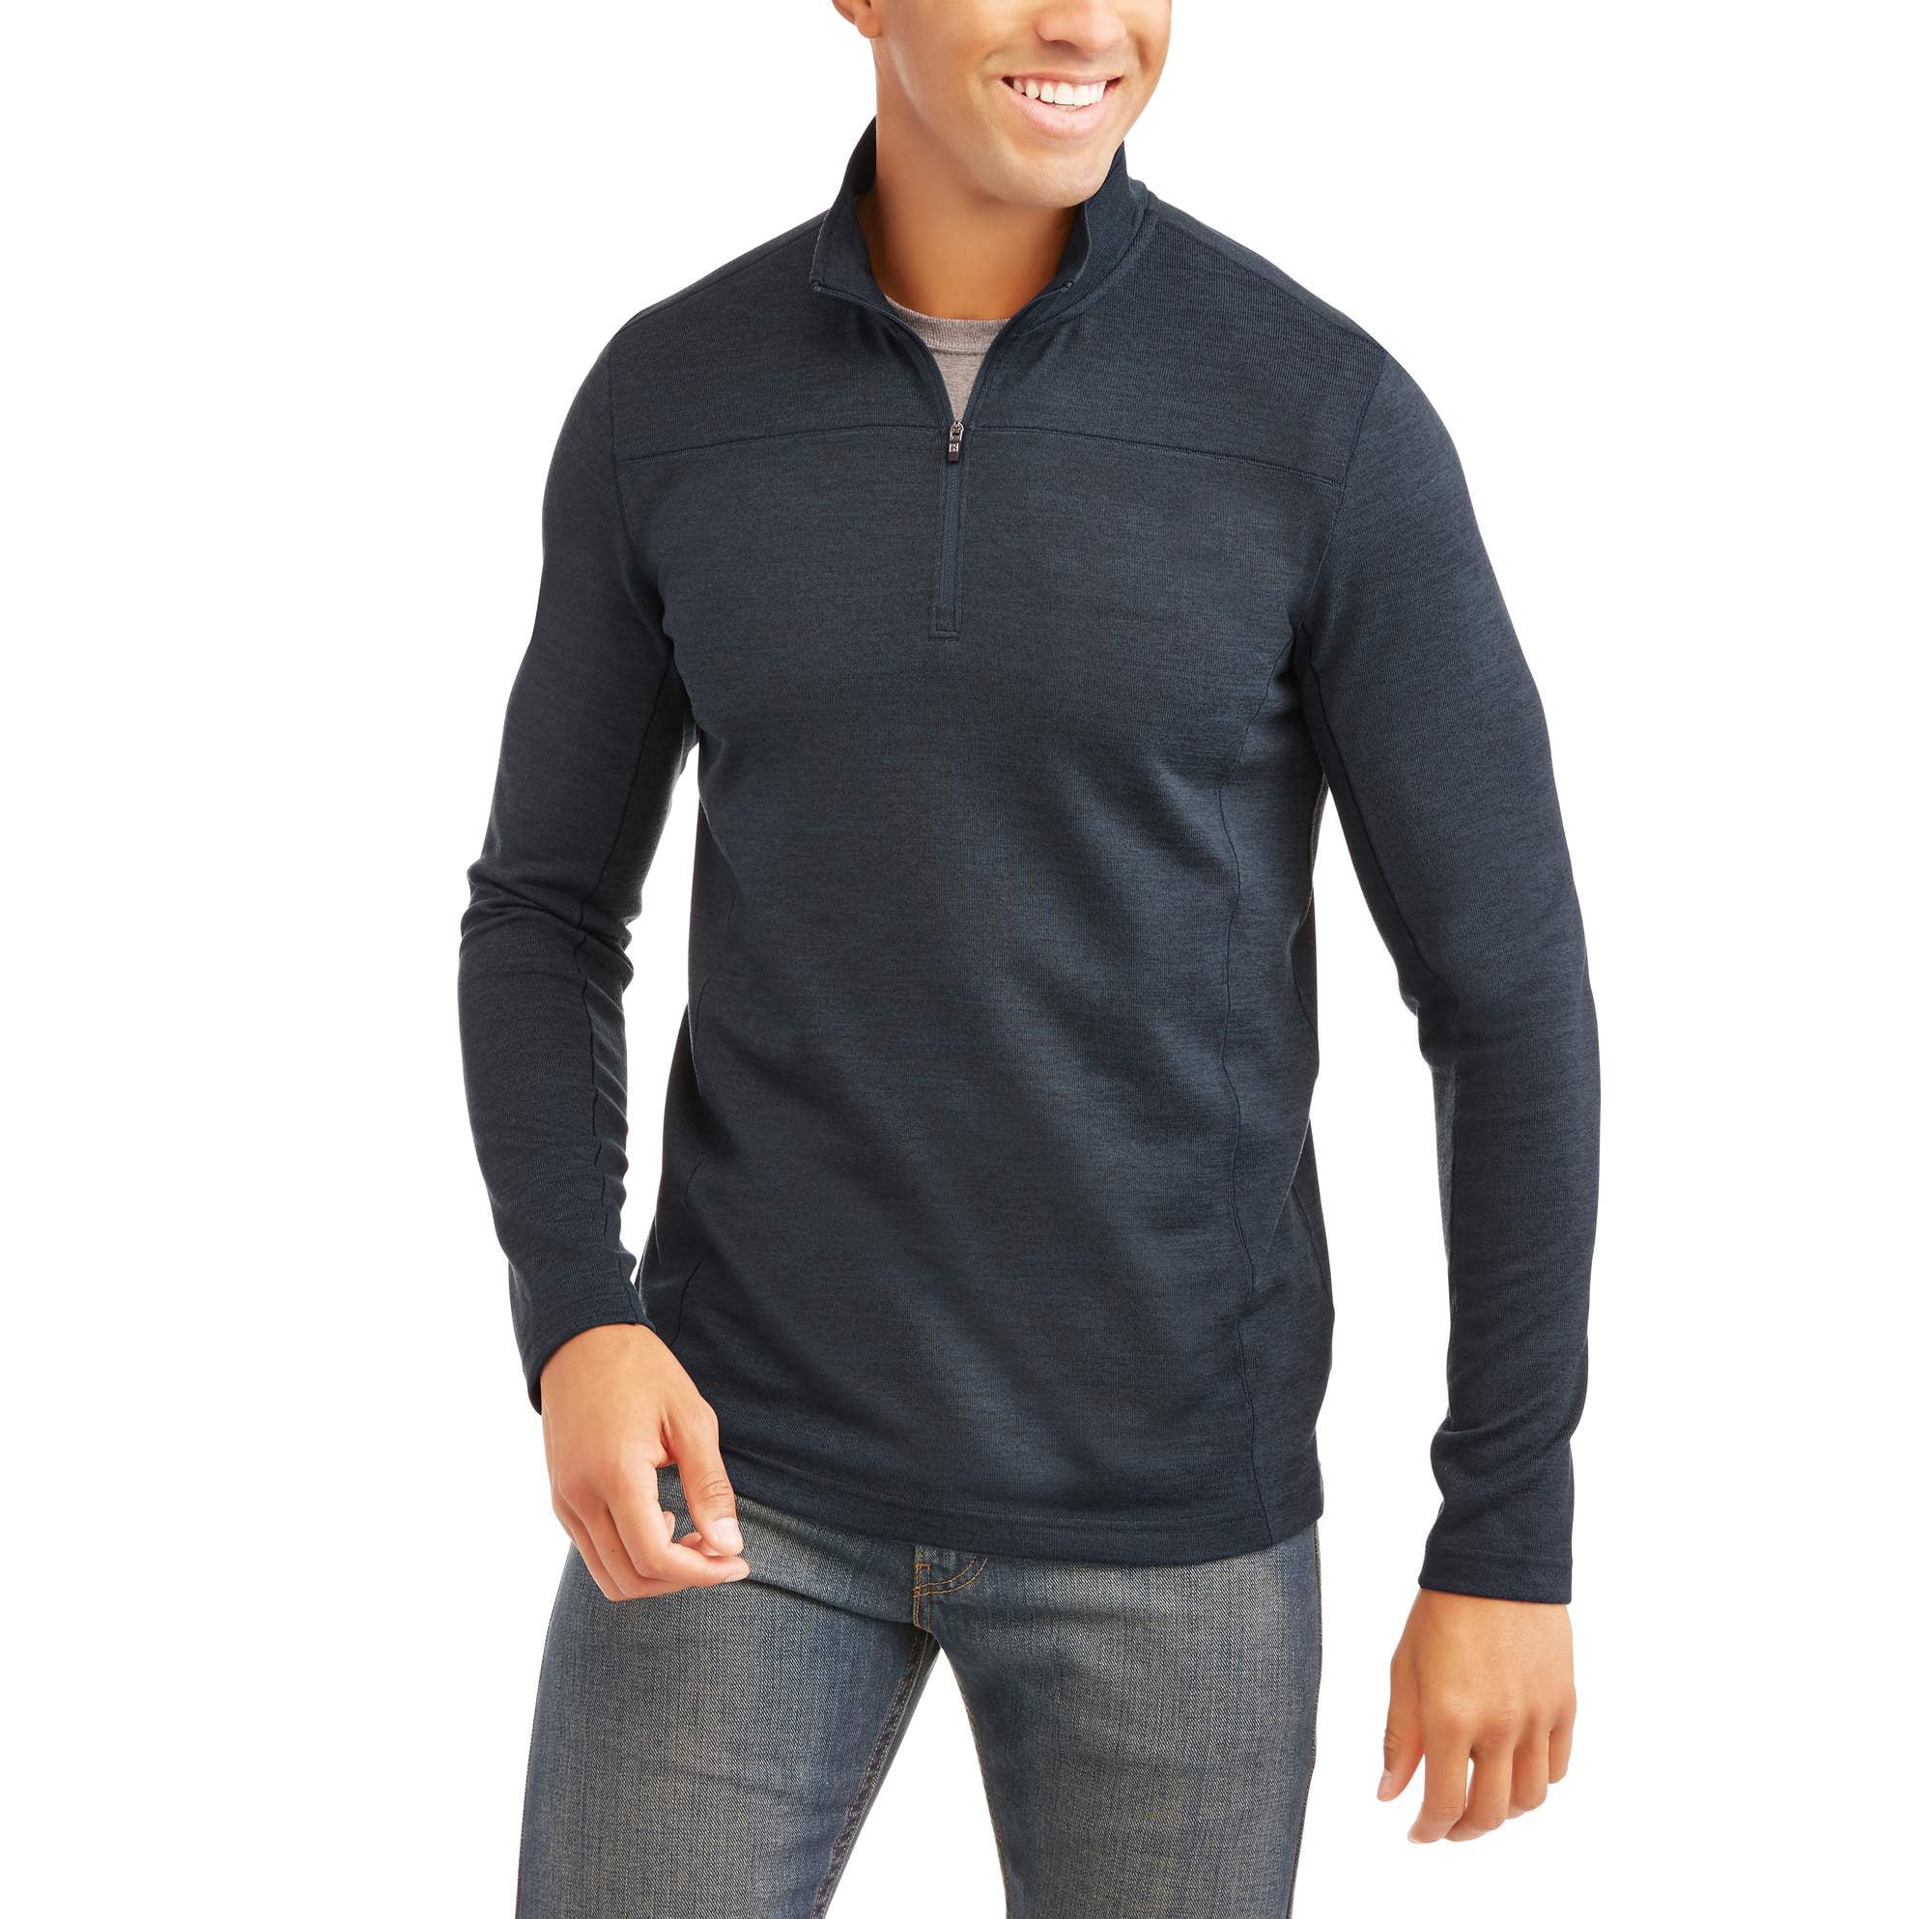 Swiss Tech Big Men's Light Weight Quarter Zip Sweater Jacket - Walmart.com